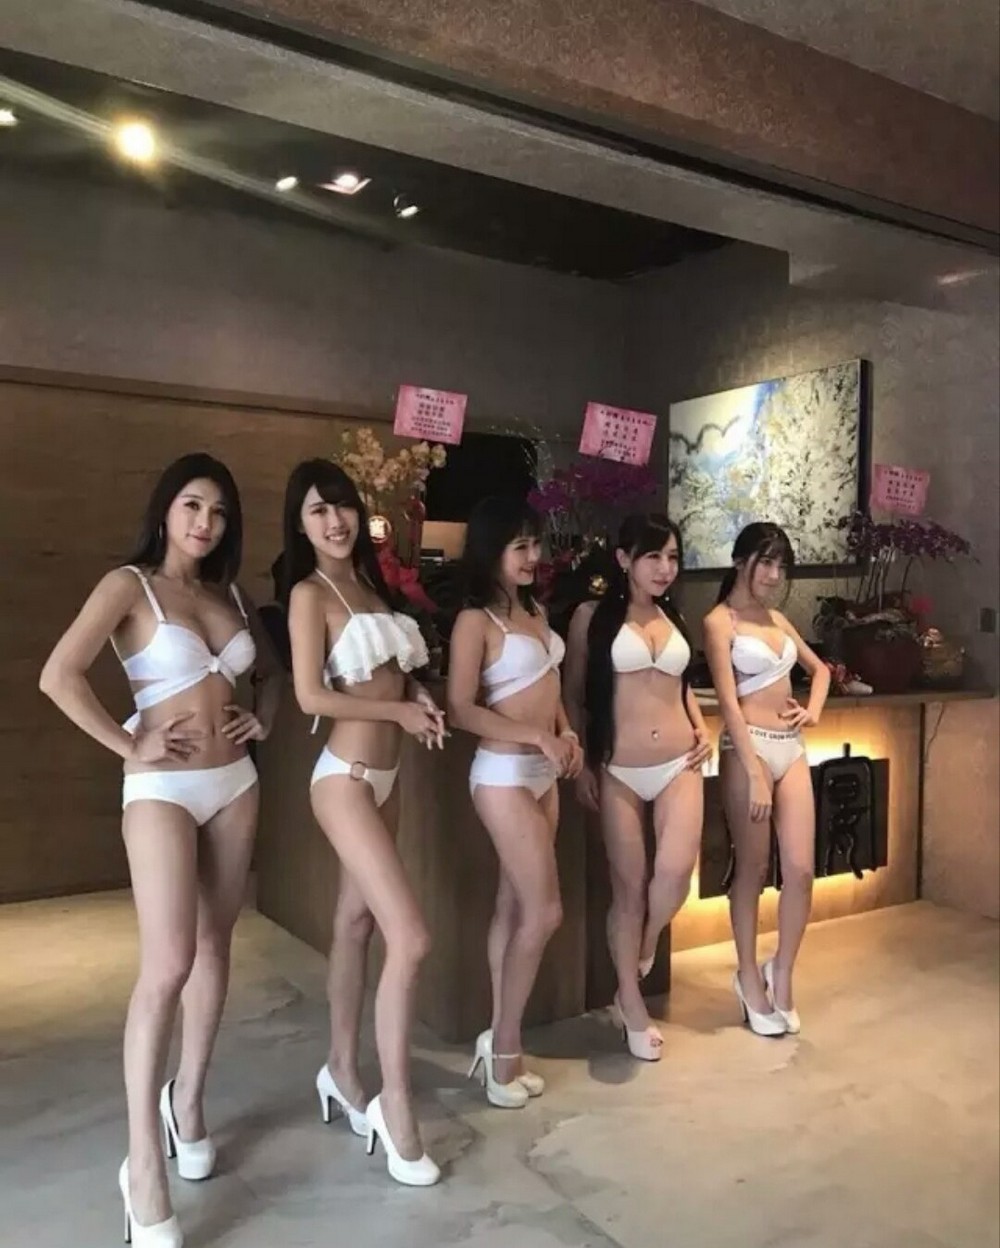 Горячие модели в купальниках - официантки китайского ресторана